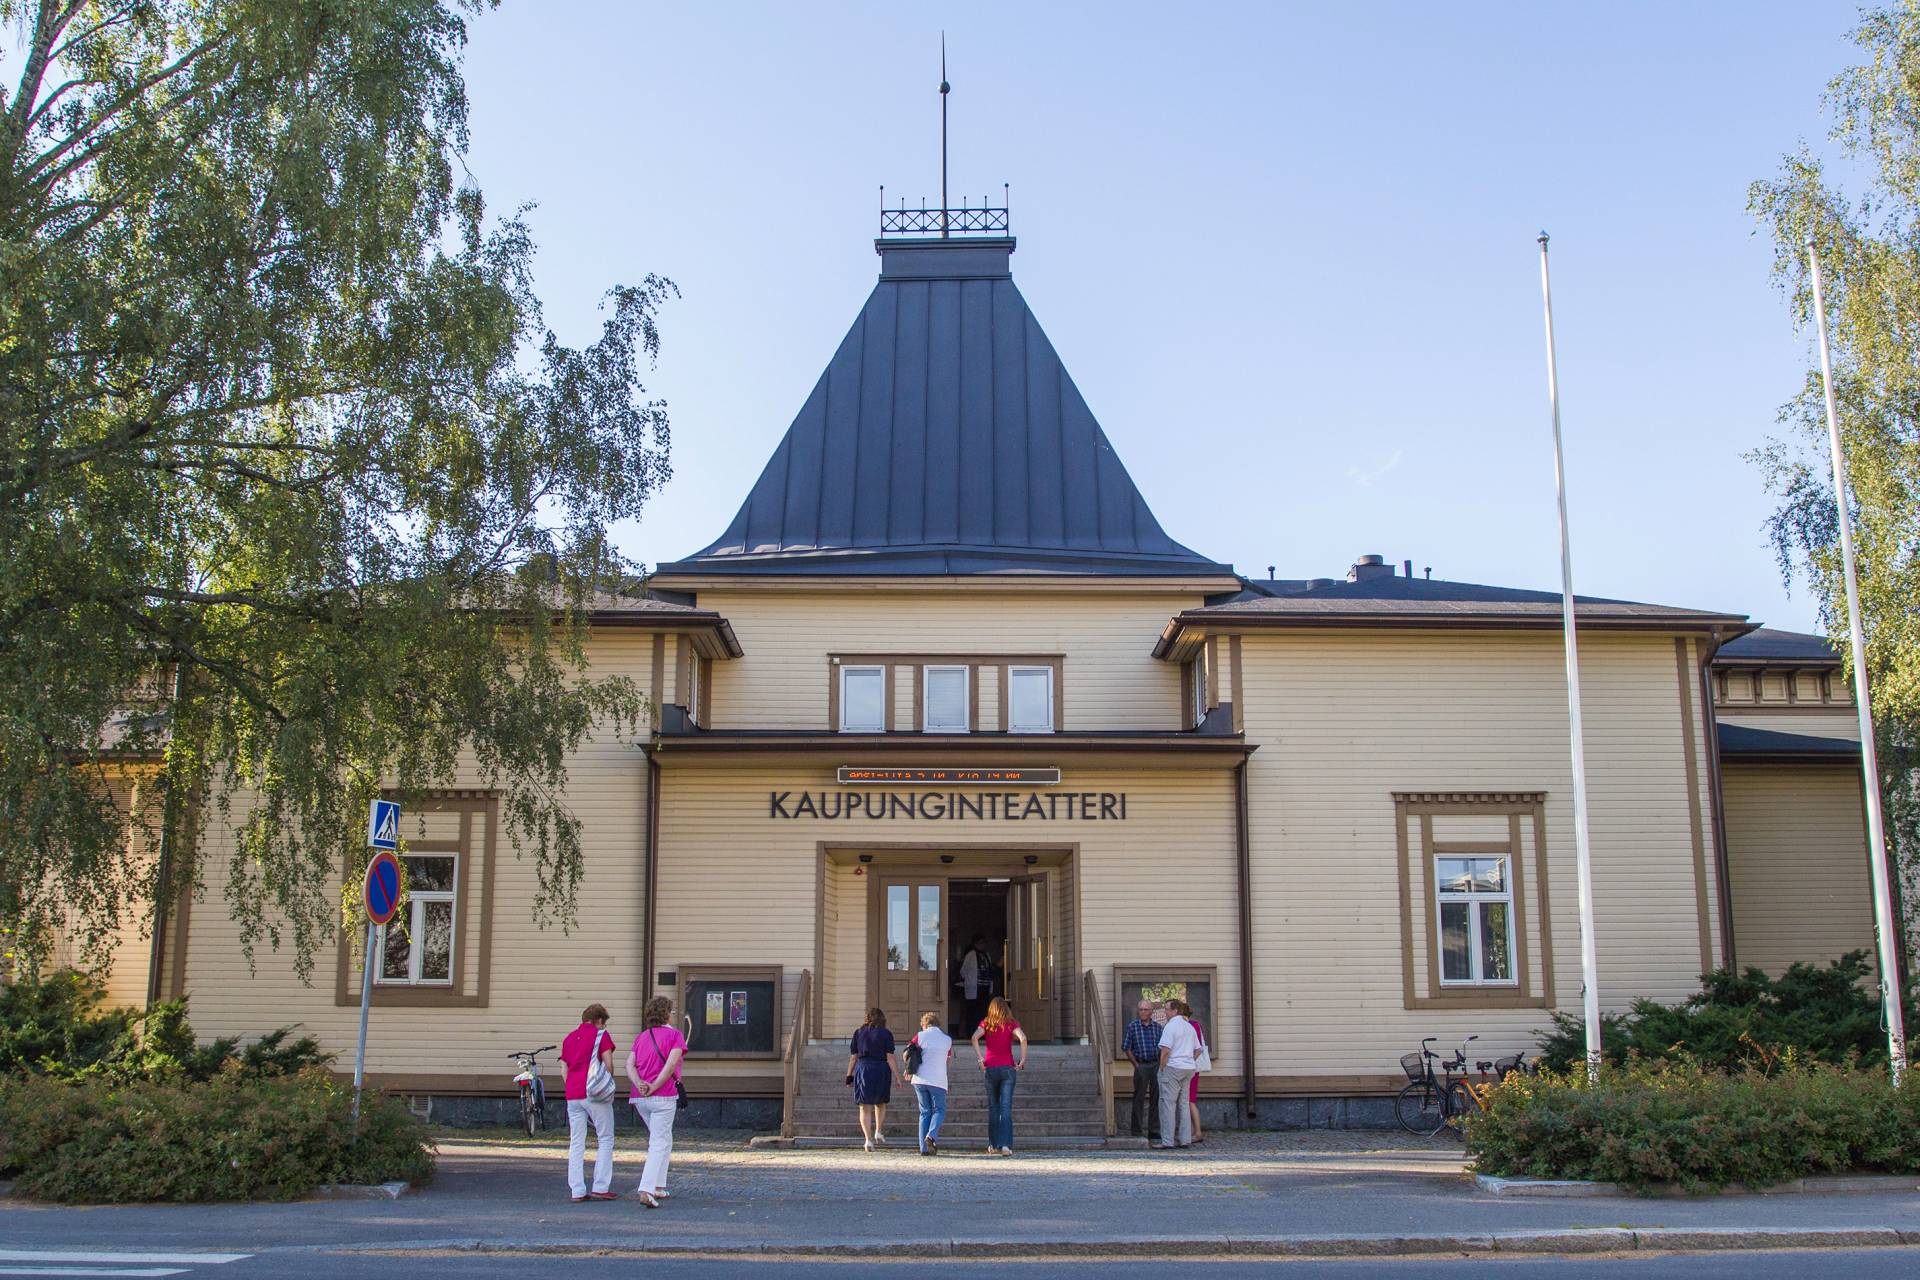 Valkeakoski city theatre.